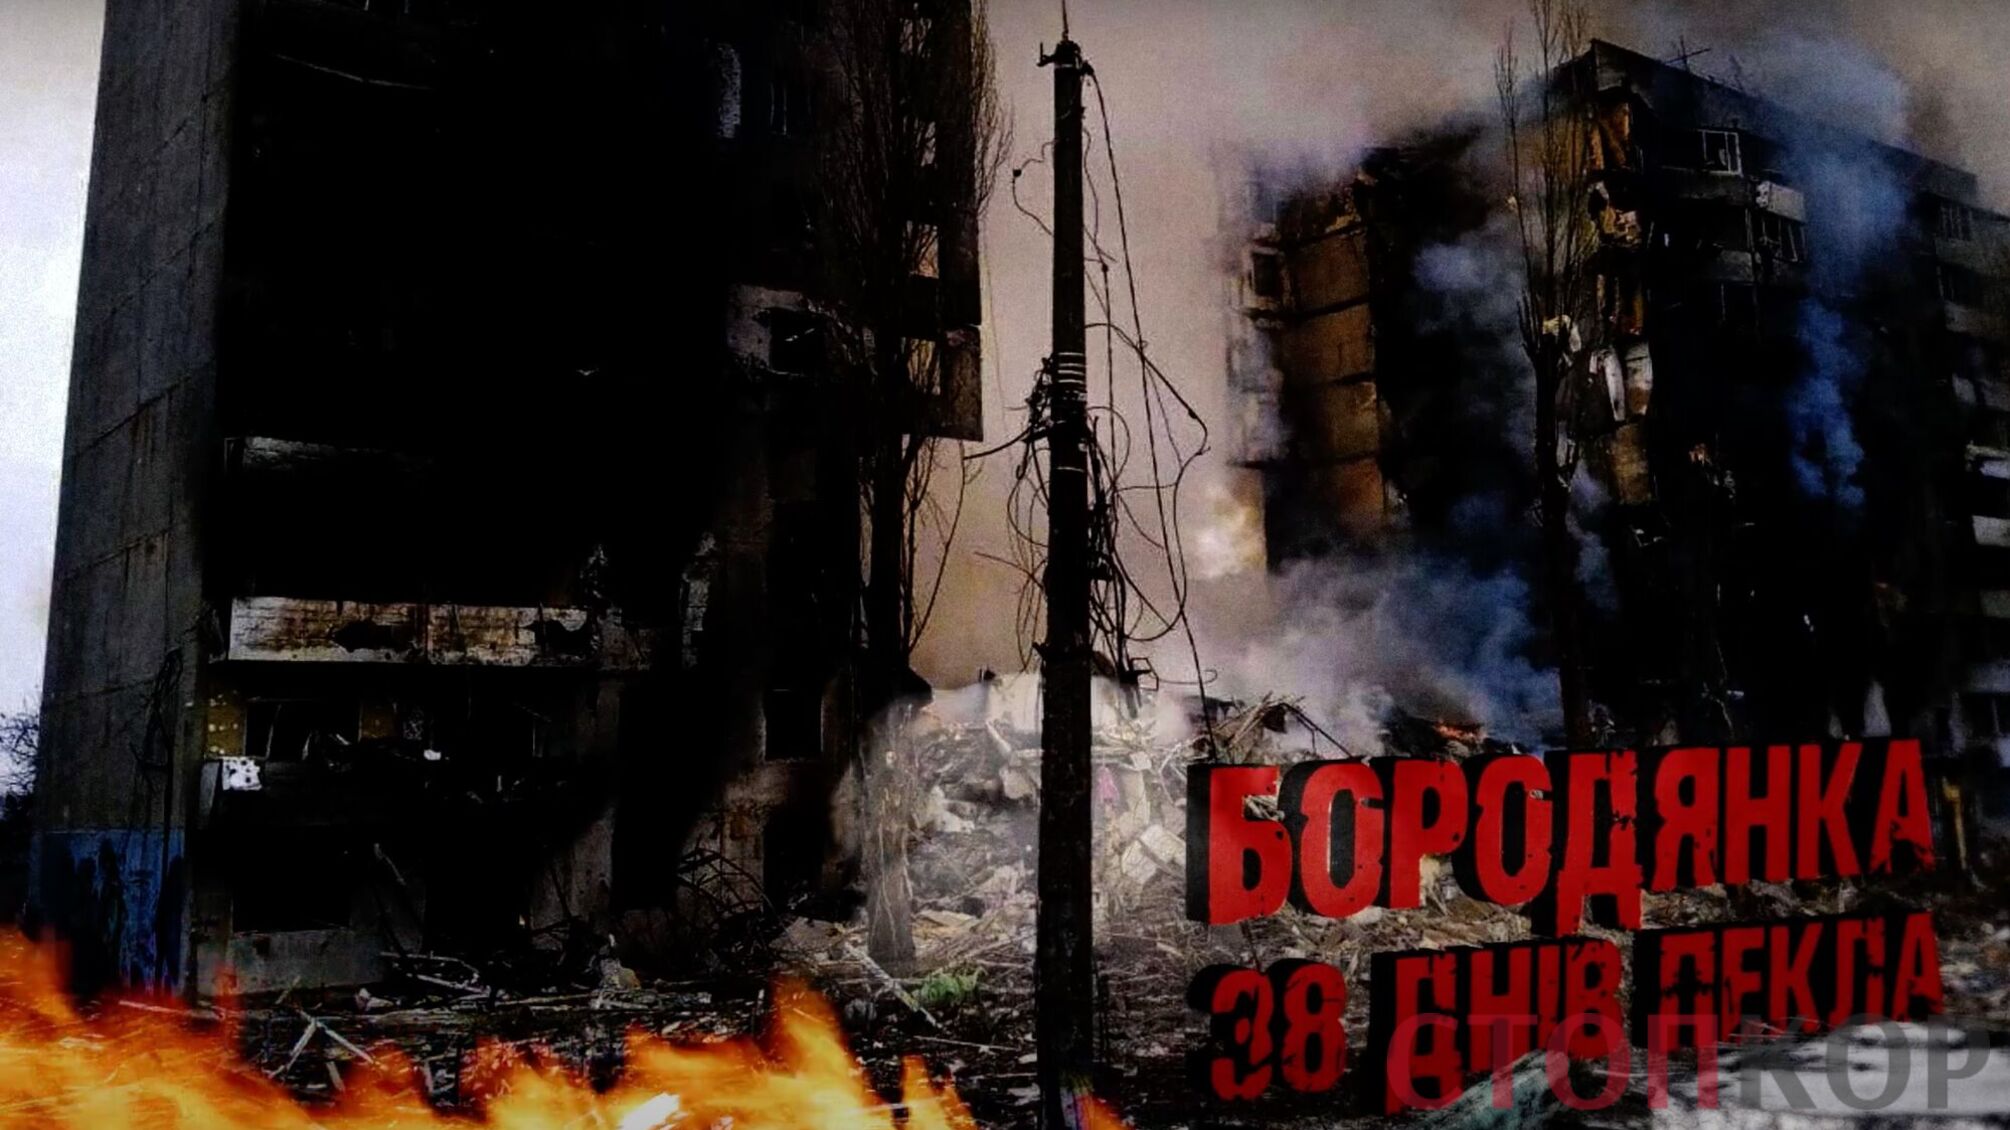 38 днів пекла: як виглядає Бородянка після жахів 'русского мира' 